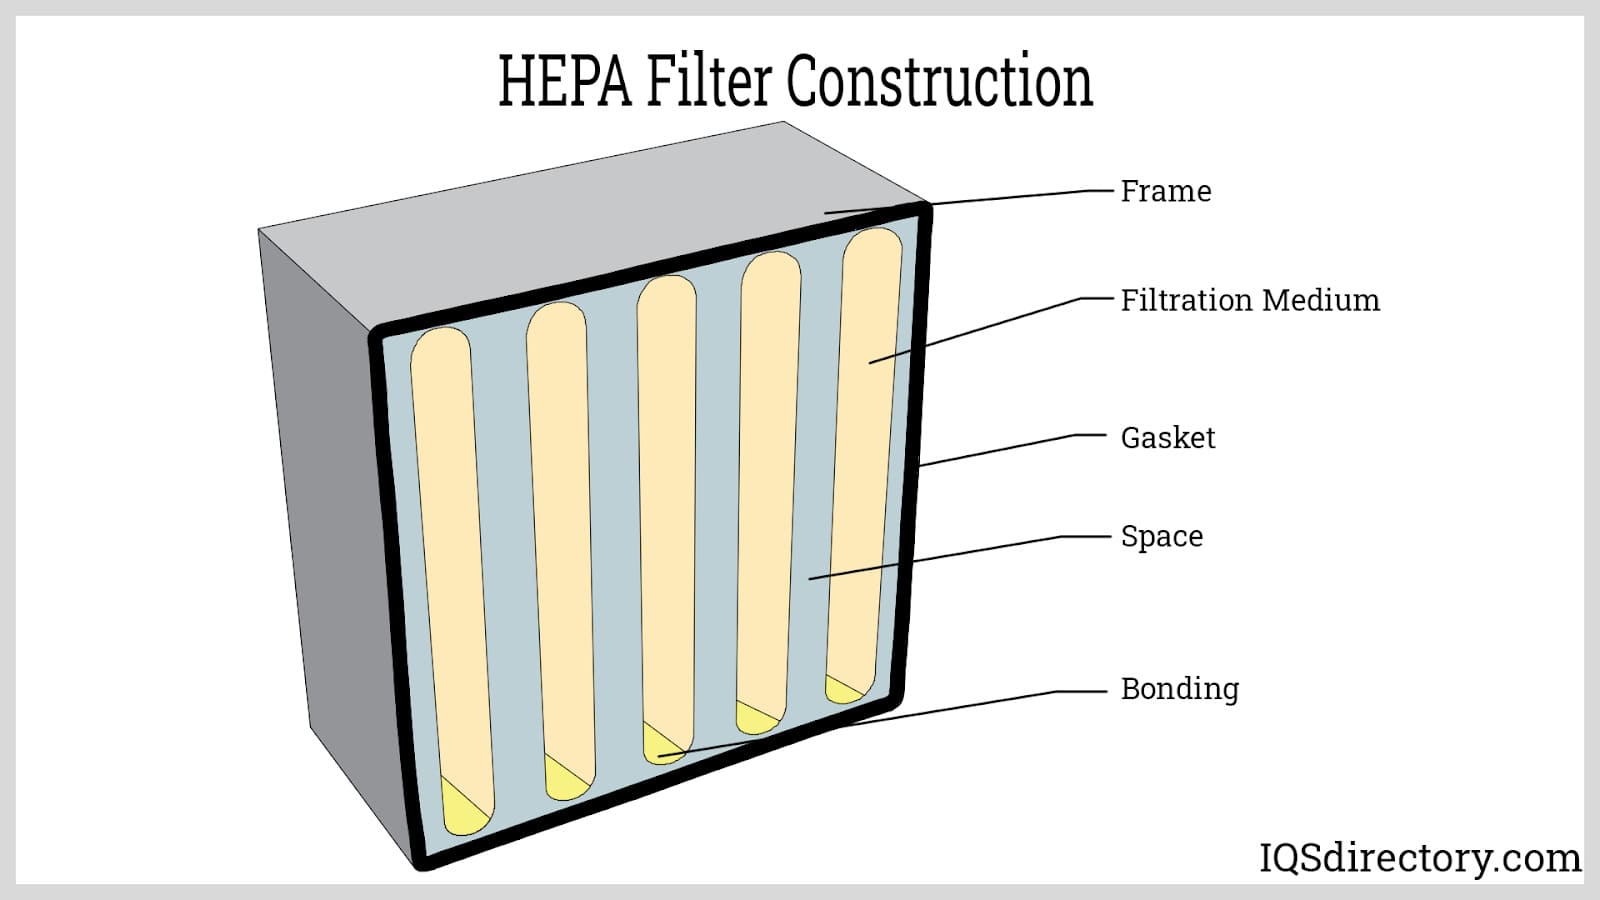 HEPA Filter Construction